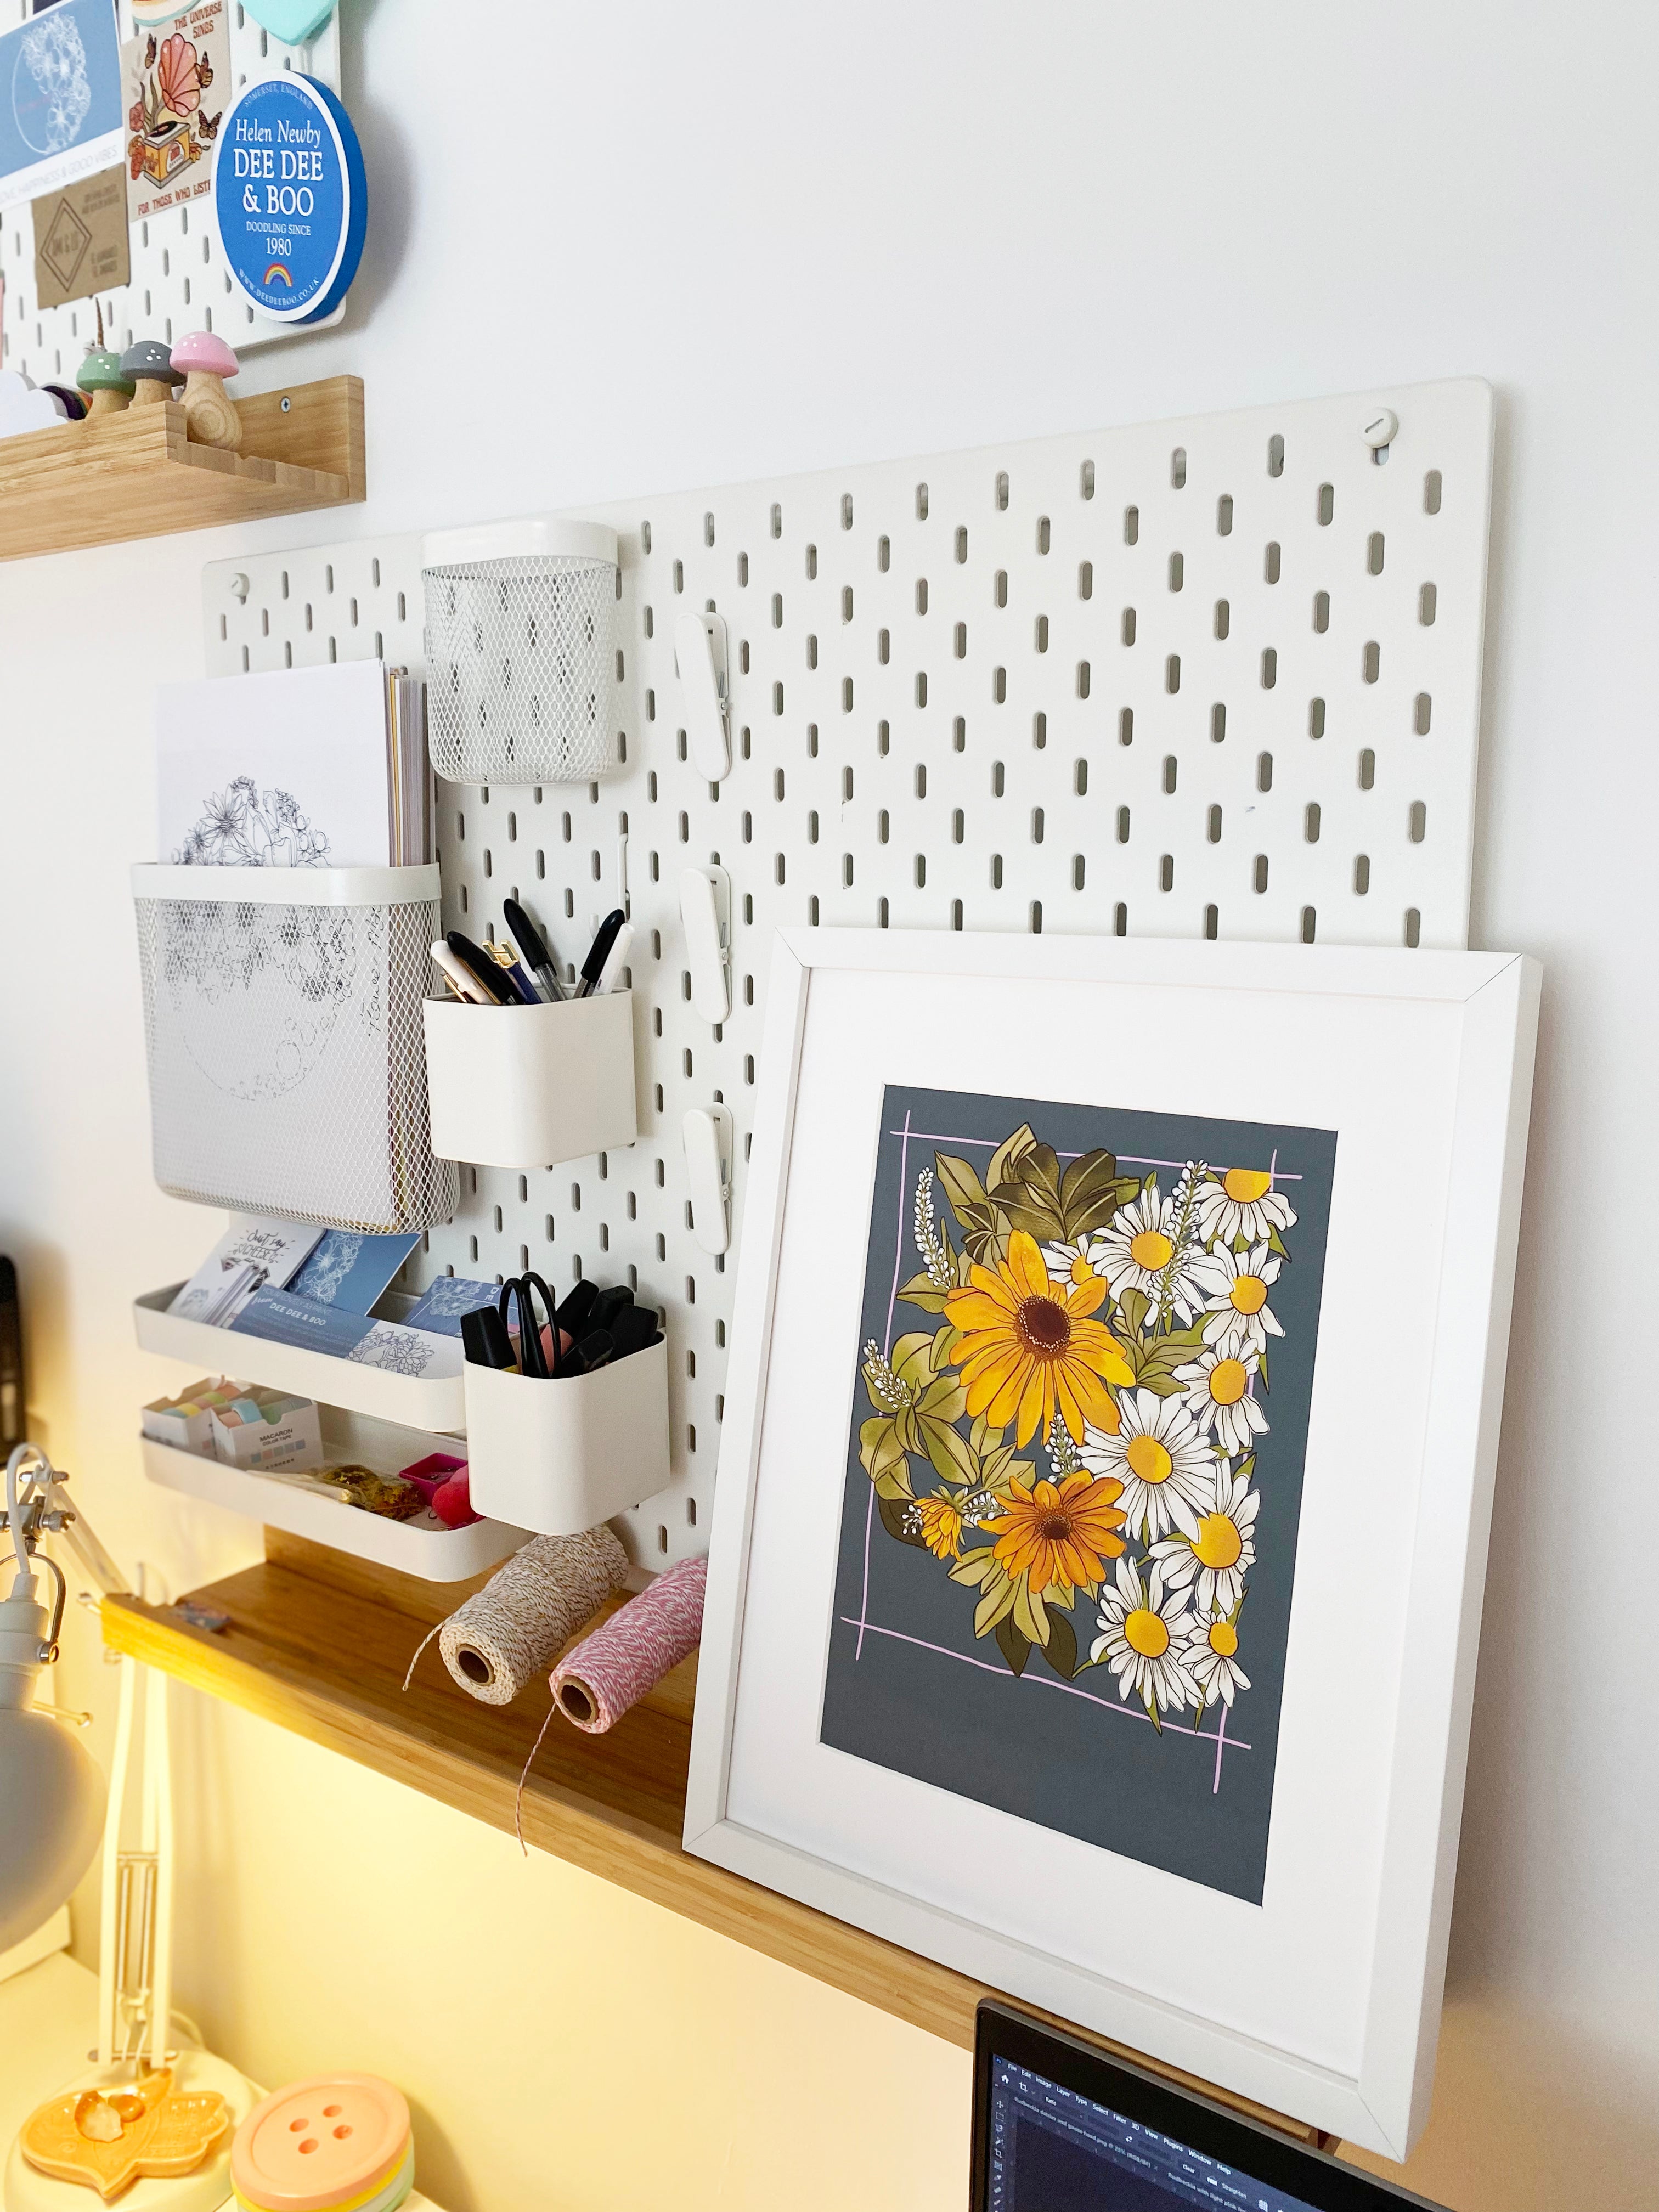 Rudbeckia, daisies and gooseneck floral print